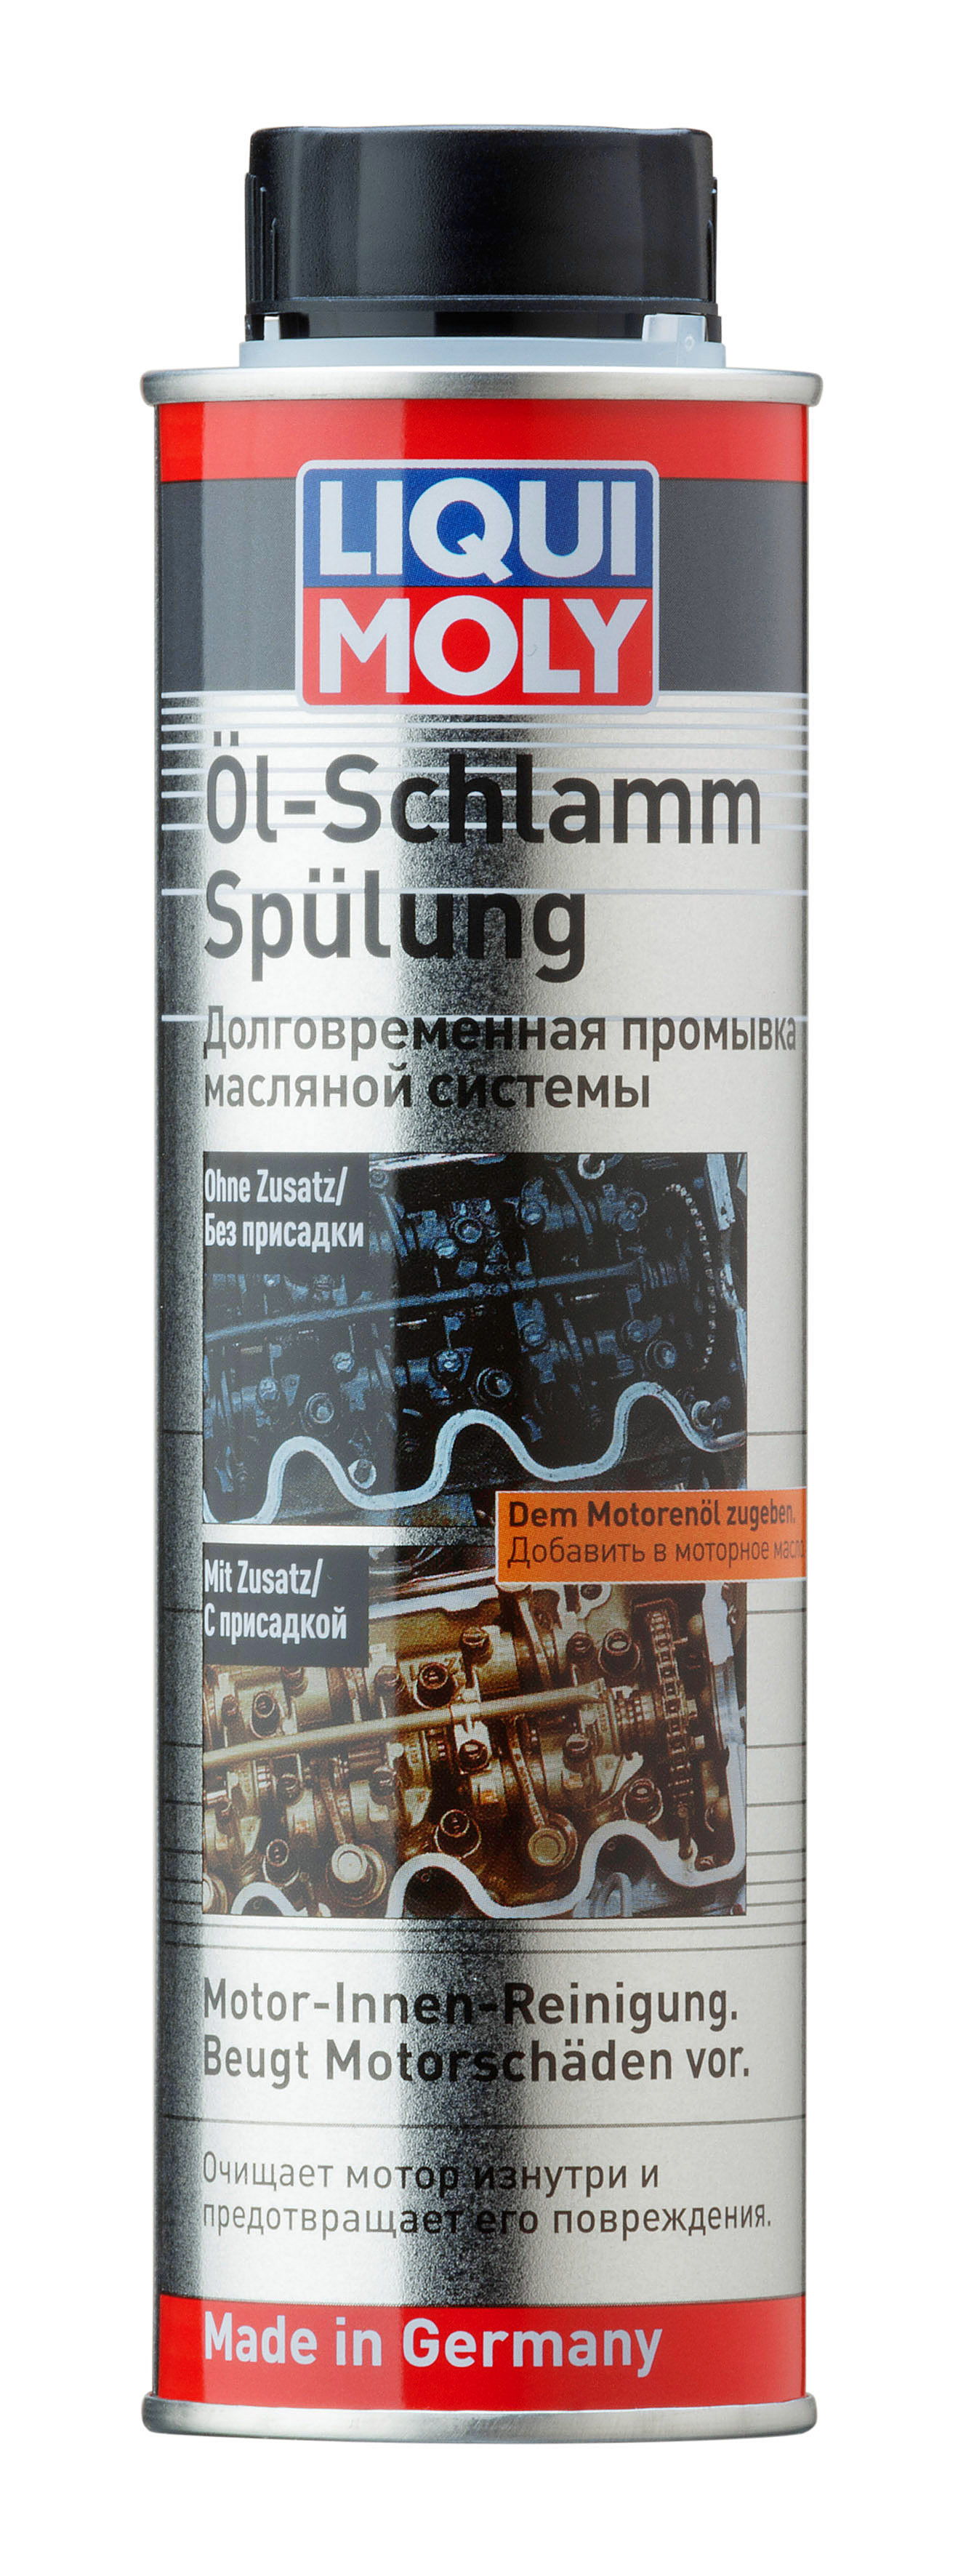 Долговременная промывка масляной сист. Oil-Schlamm-Spulung (0,3л) - Liqui Moly 1990